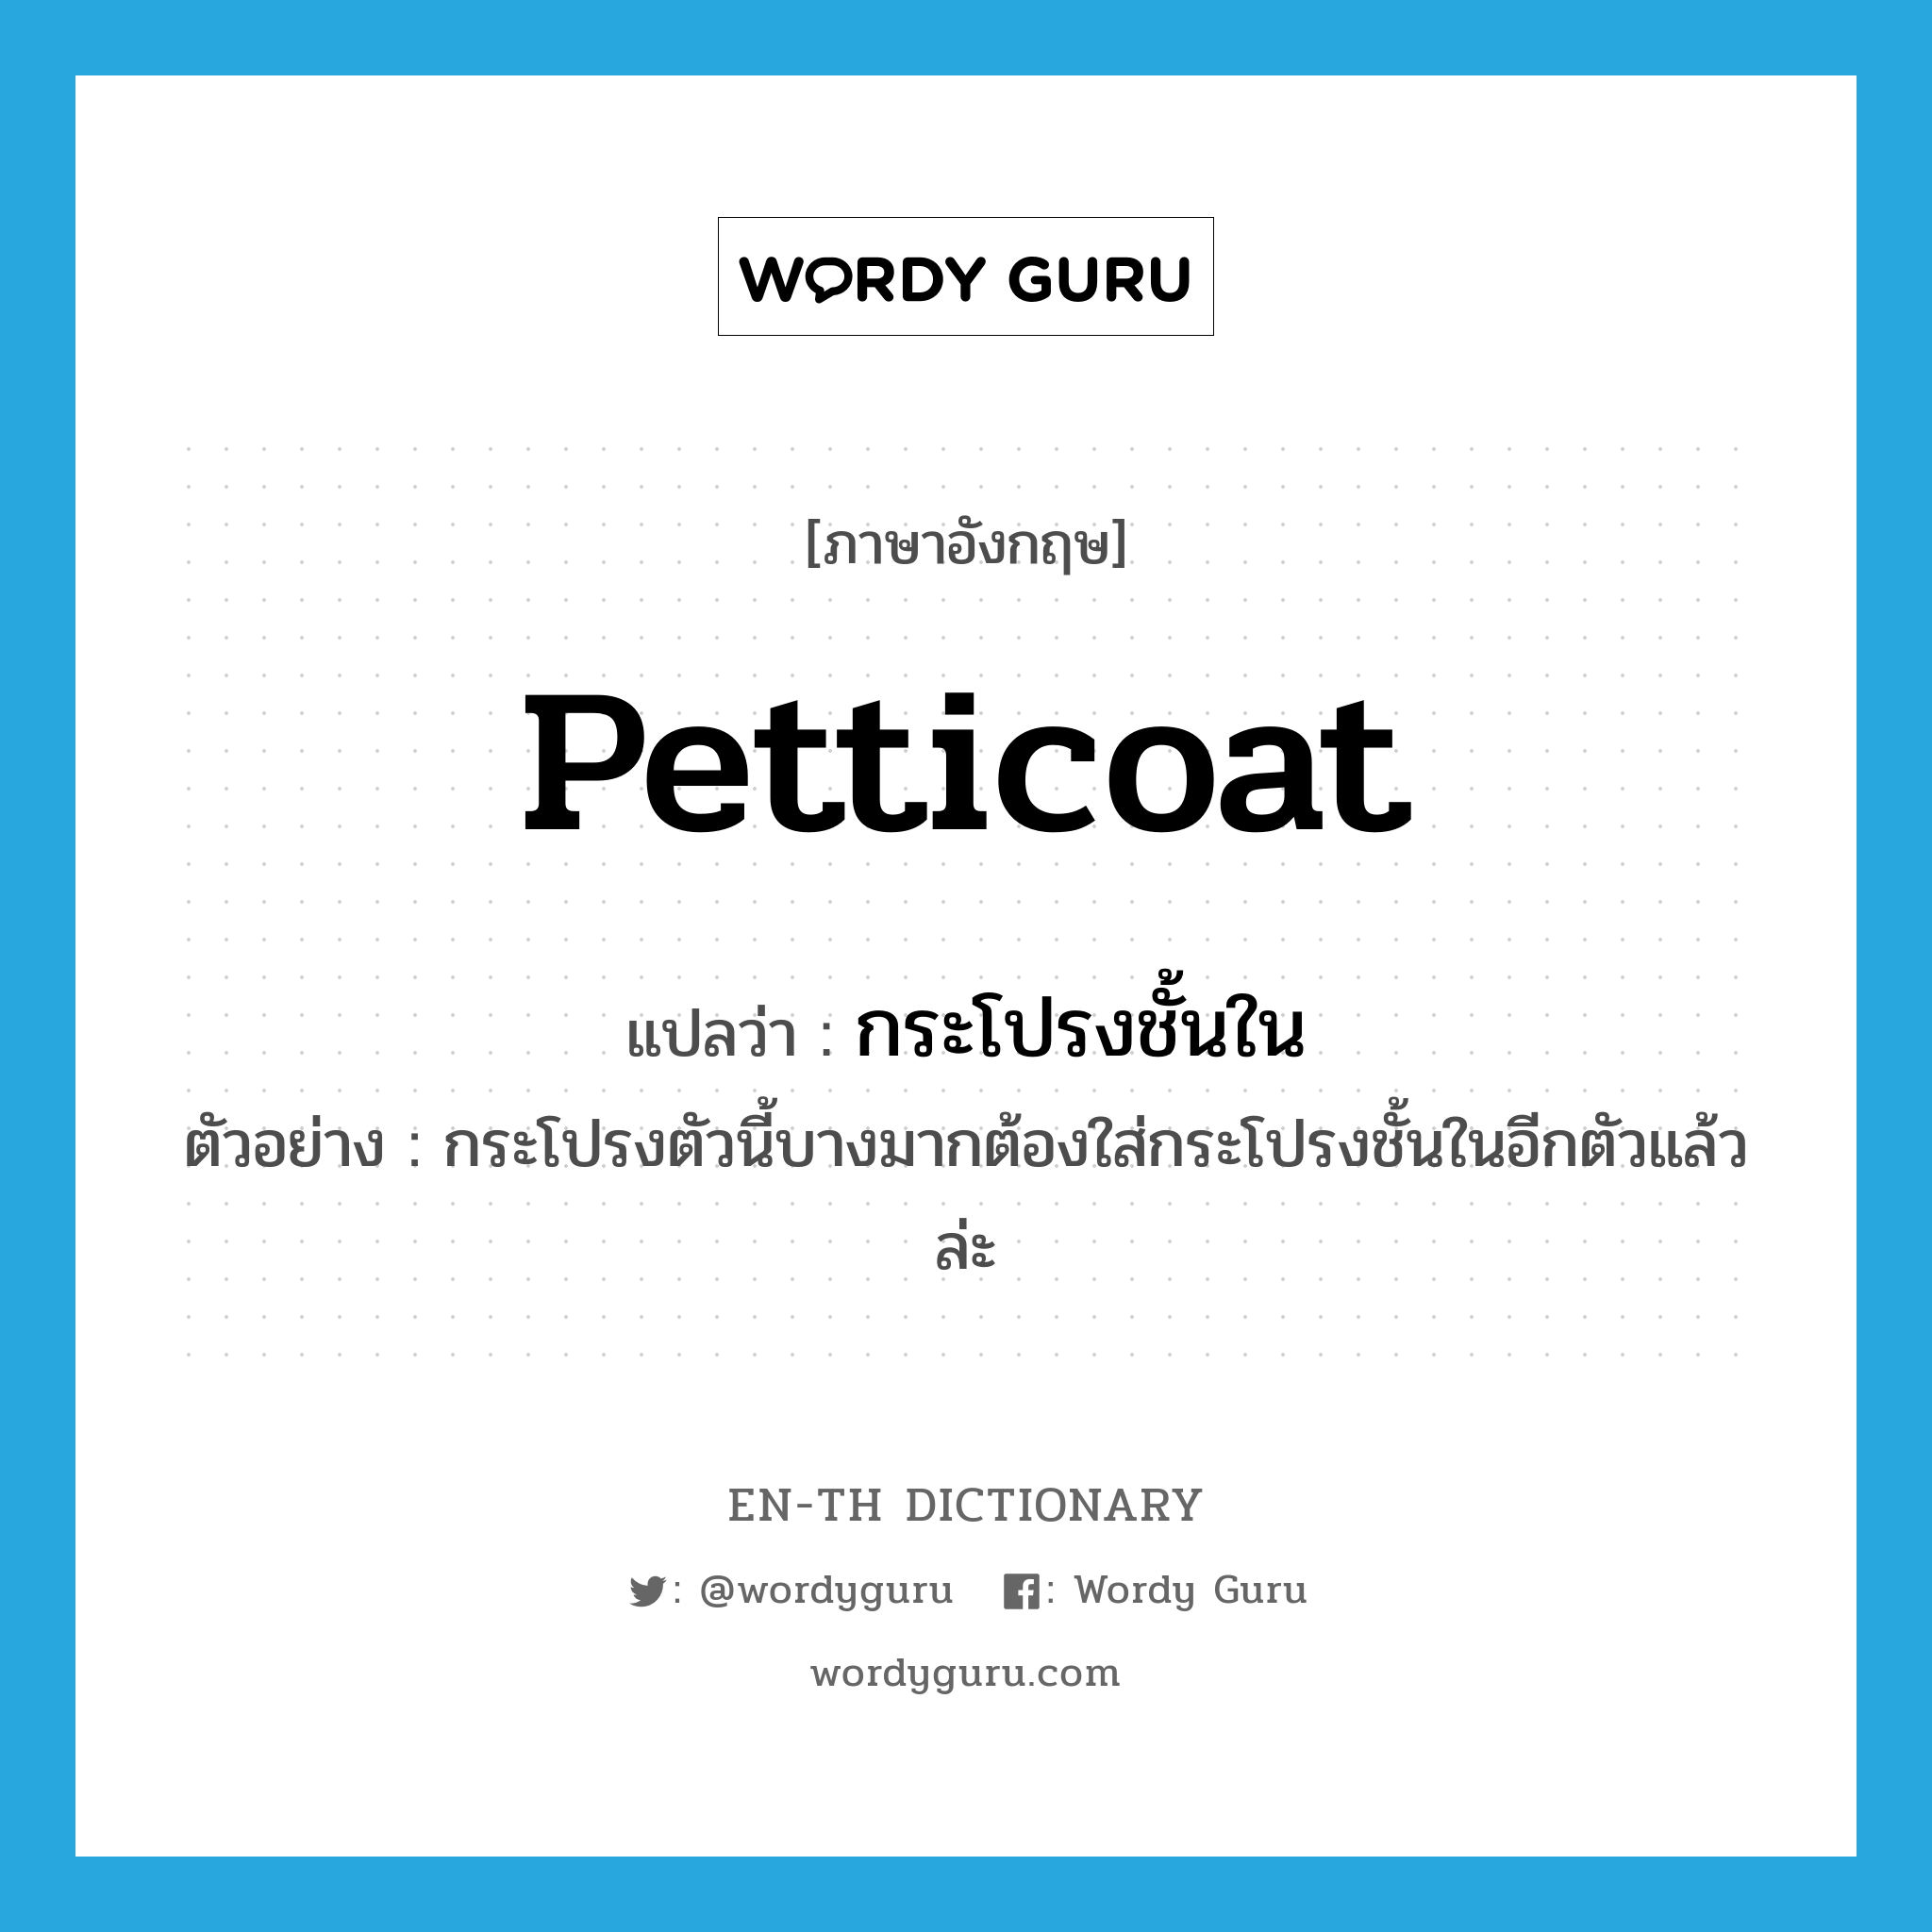 petticoat แปลว่า?, คำศัพท์ภาษาอังกฤษ petticoat แปลว่า กระโปรงชั้นใน ประเภท N ตัวอย่าง กระโปรงตัวนี้บางมากต้องใส่กระโปรงชั้นในอีกตัวแล้วล่ะ หมวด N